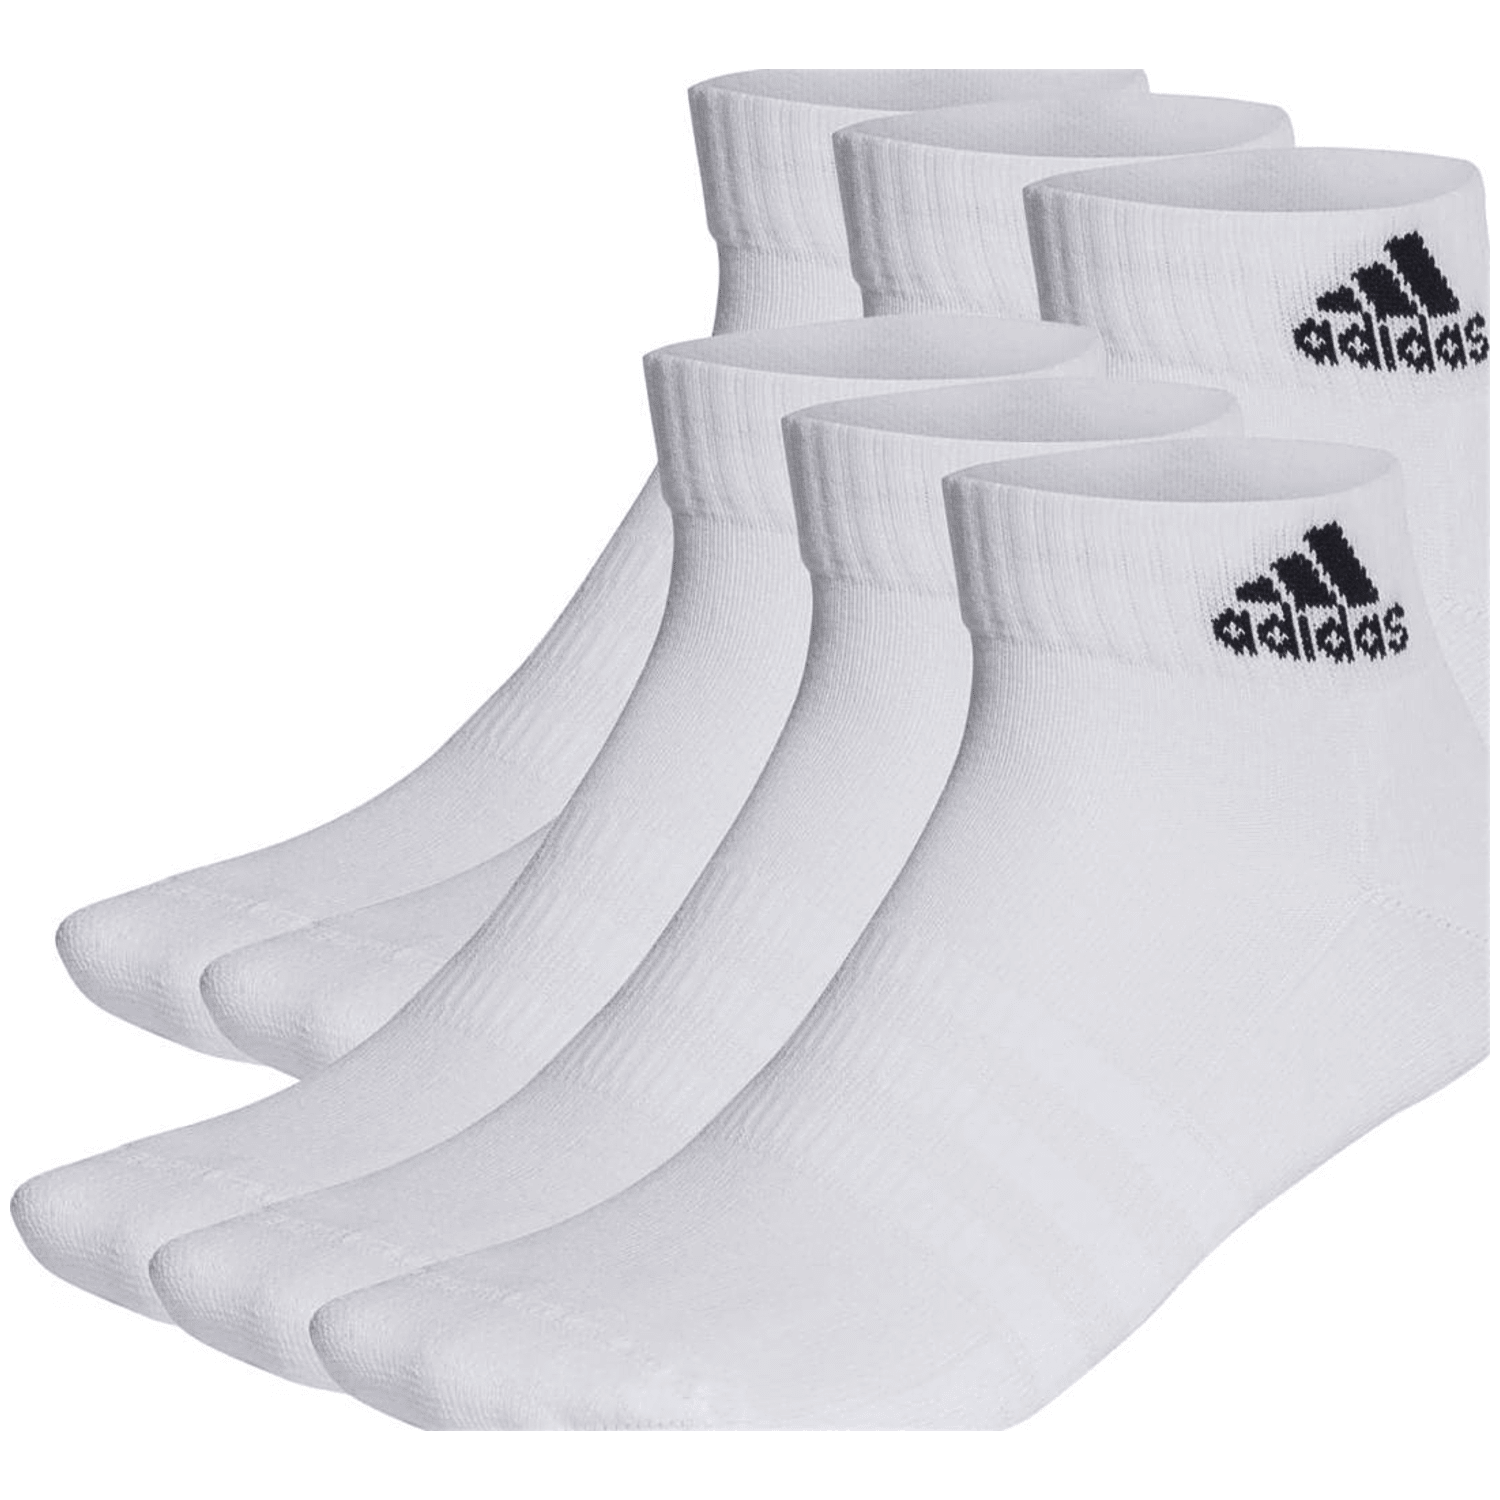 Adidas Cushioned Sportswear Ankle Socken, 6 Paar Unisex